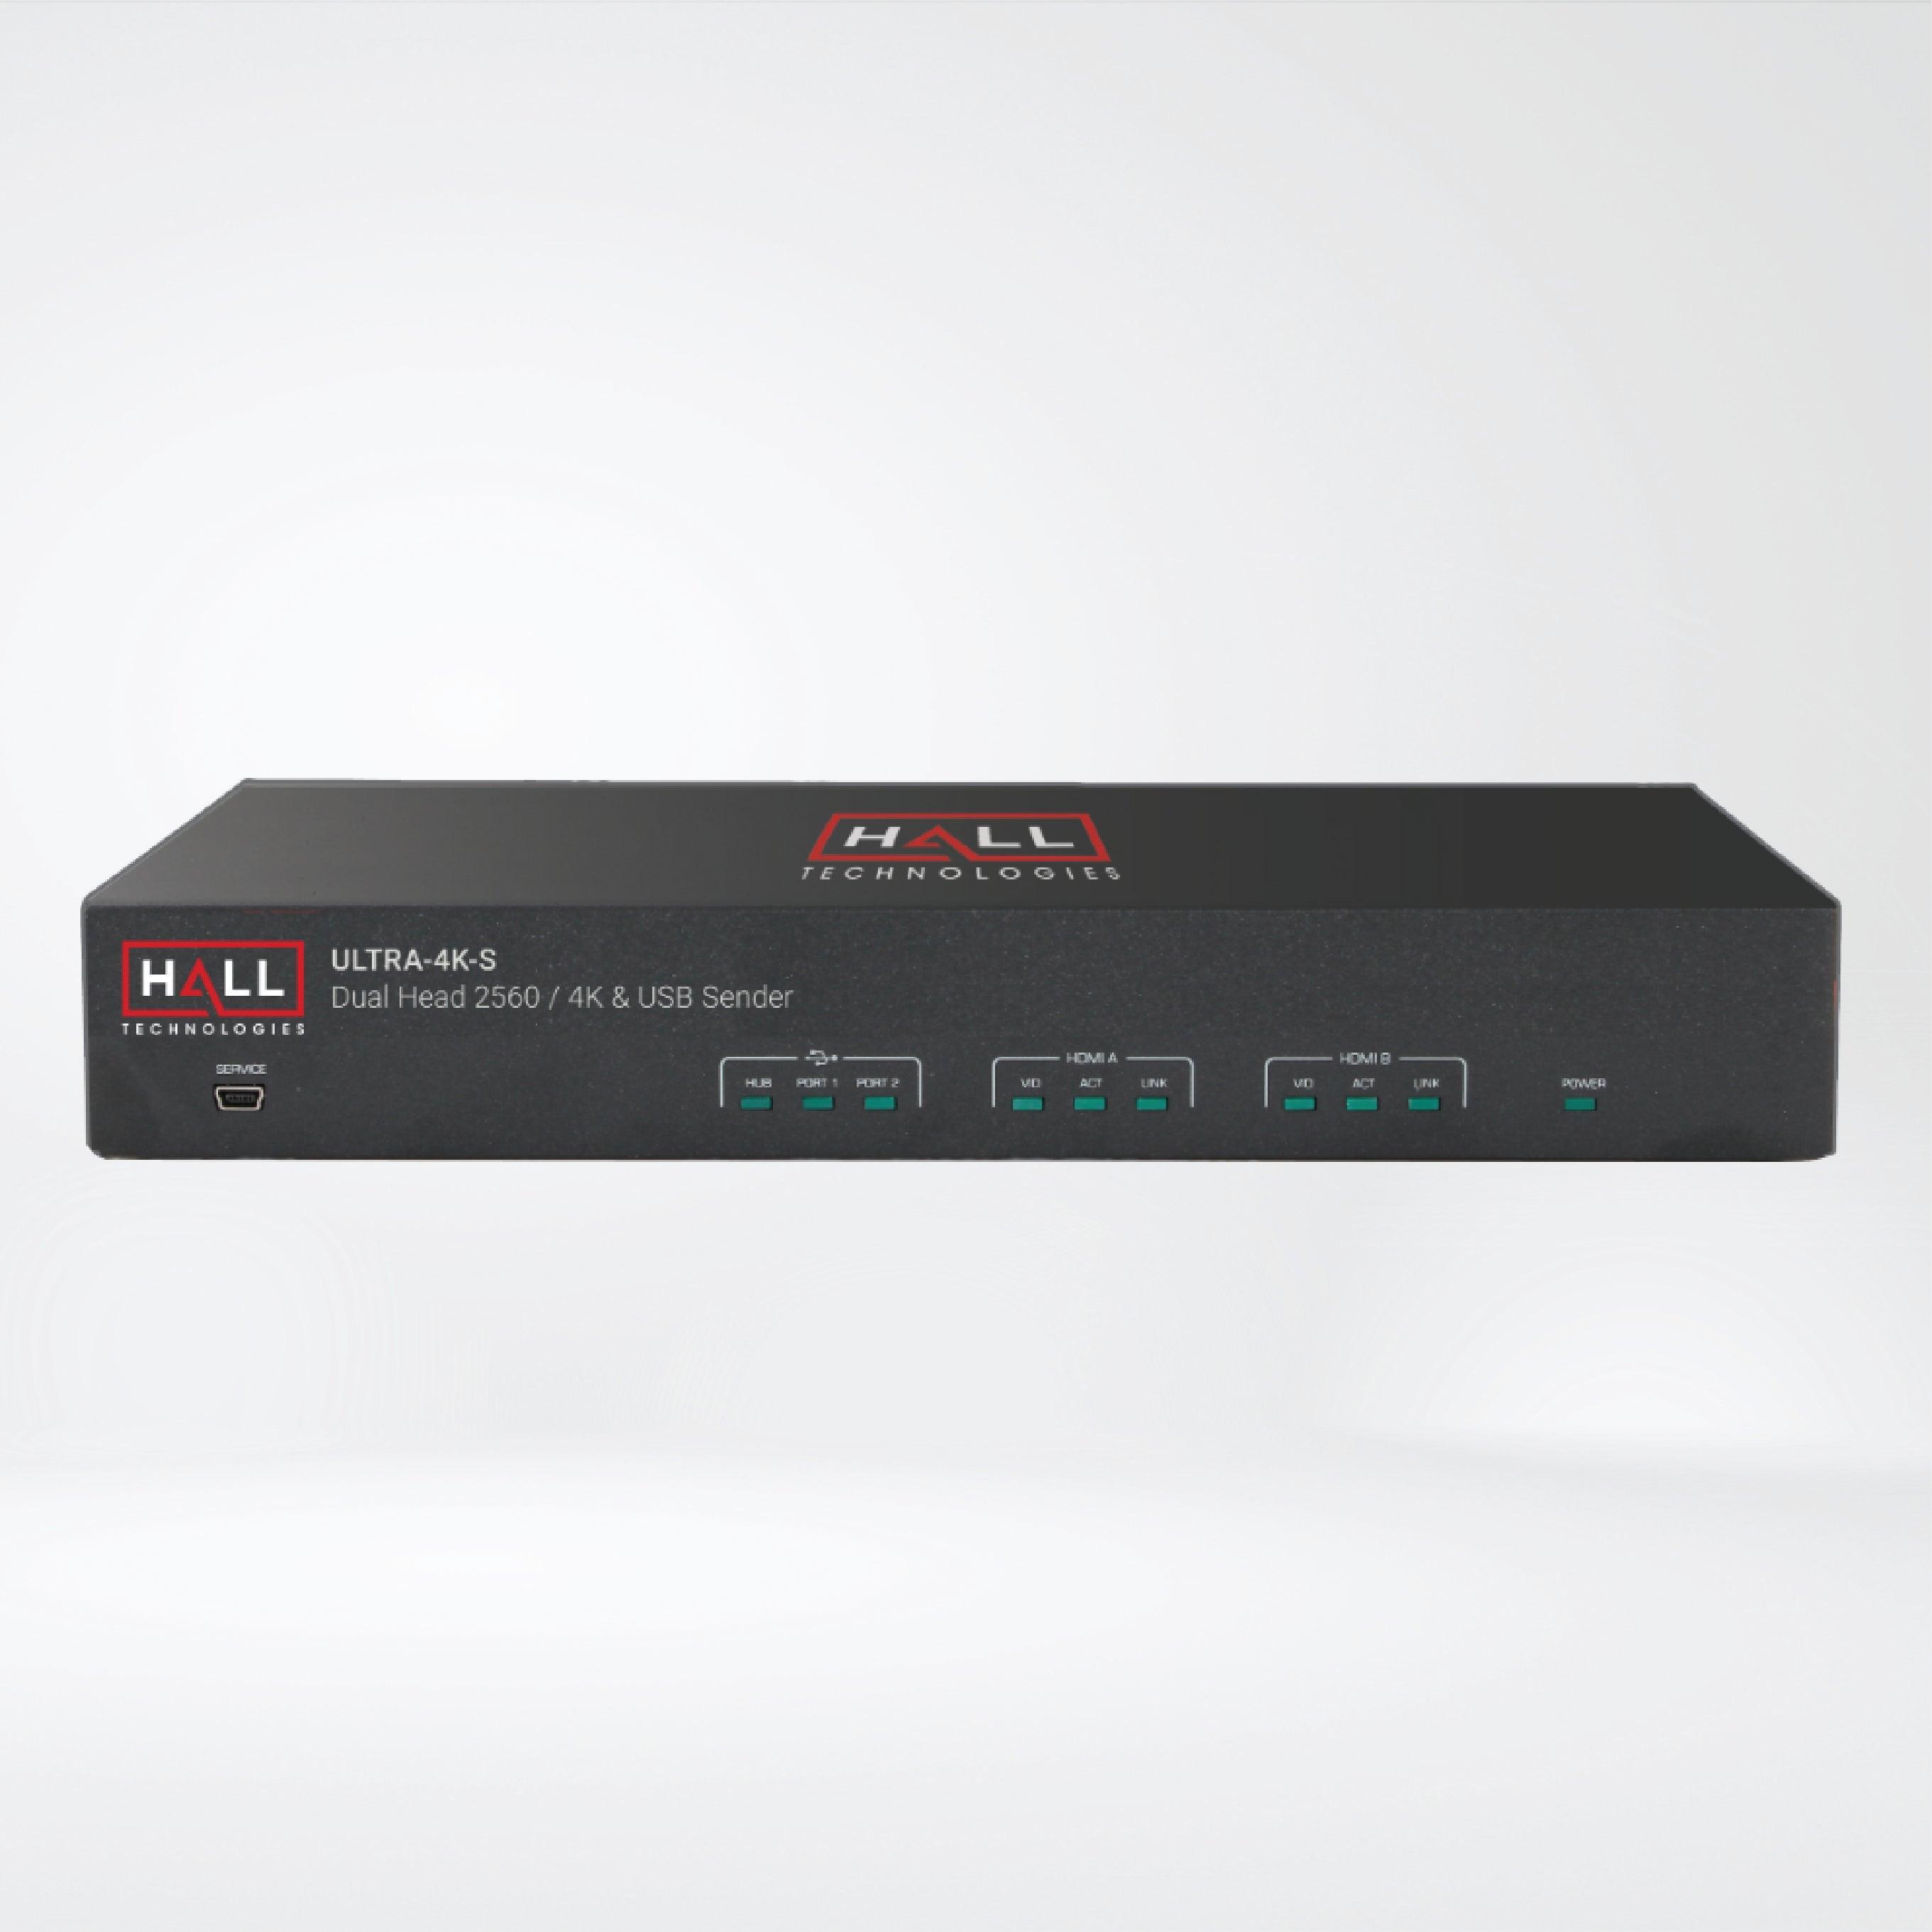 ULTRA-4K-S Dual-Head HDMI and USB 2.0 KVM Extender - Riverplus